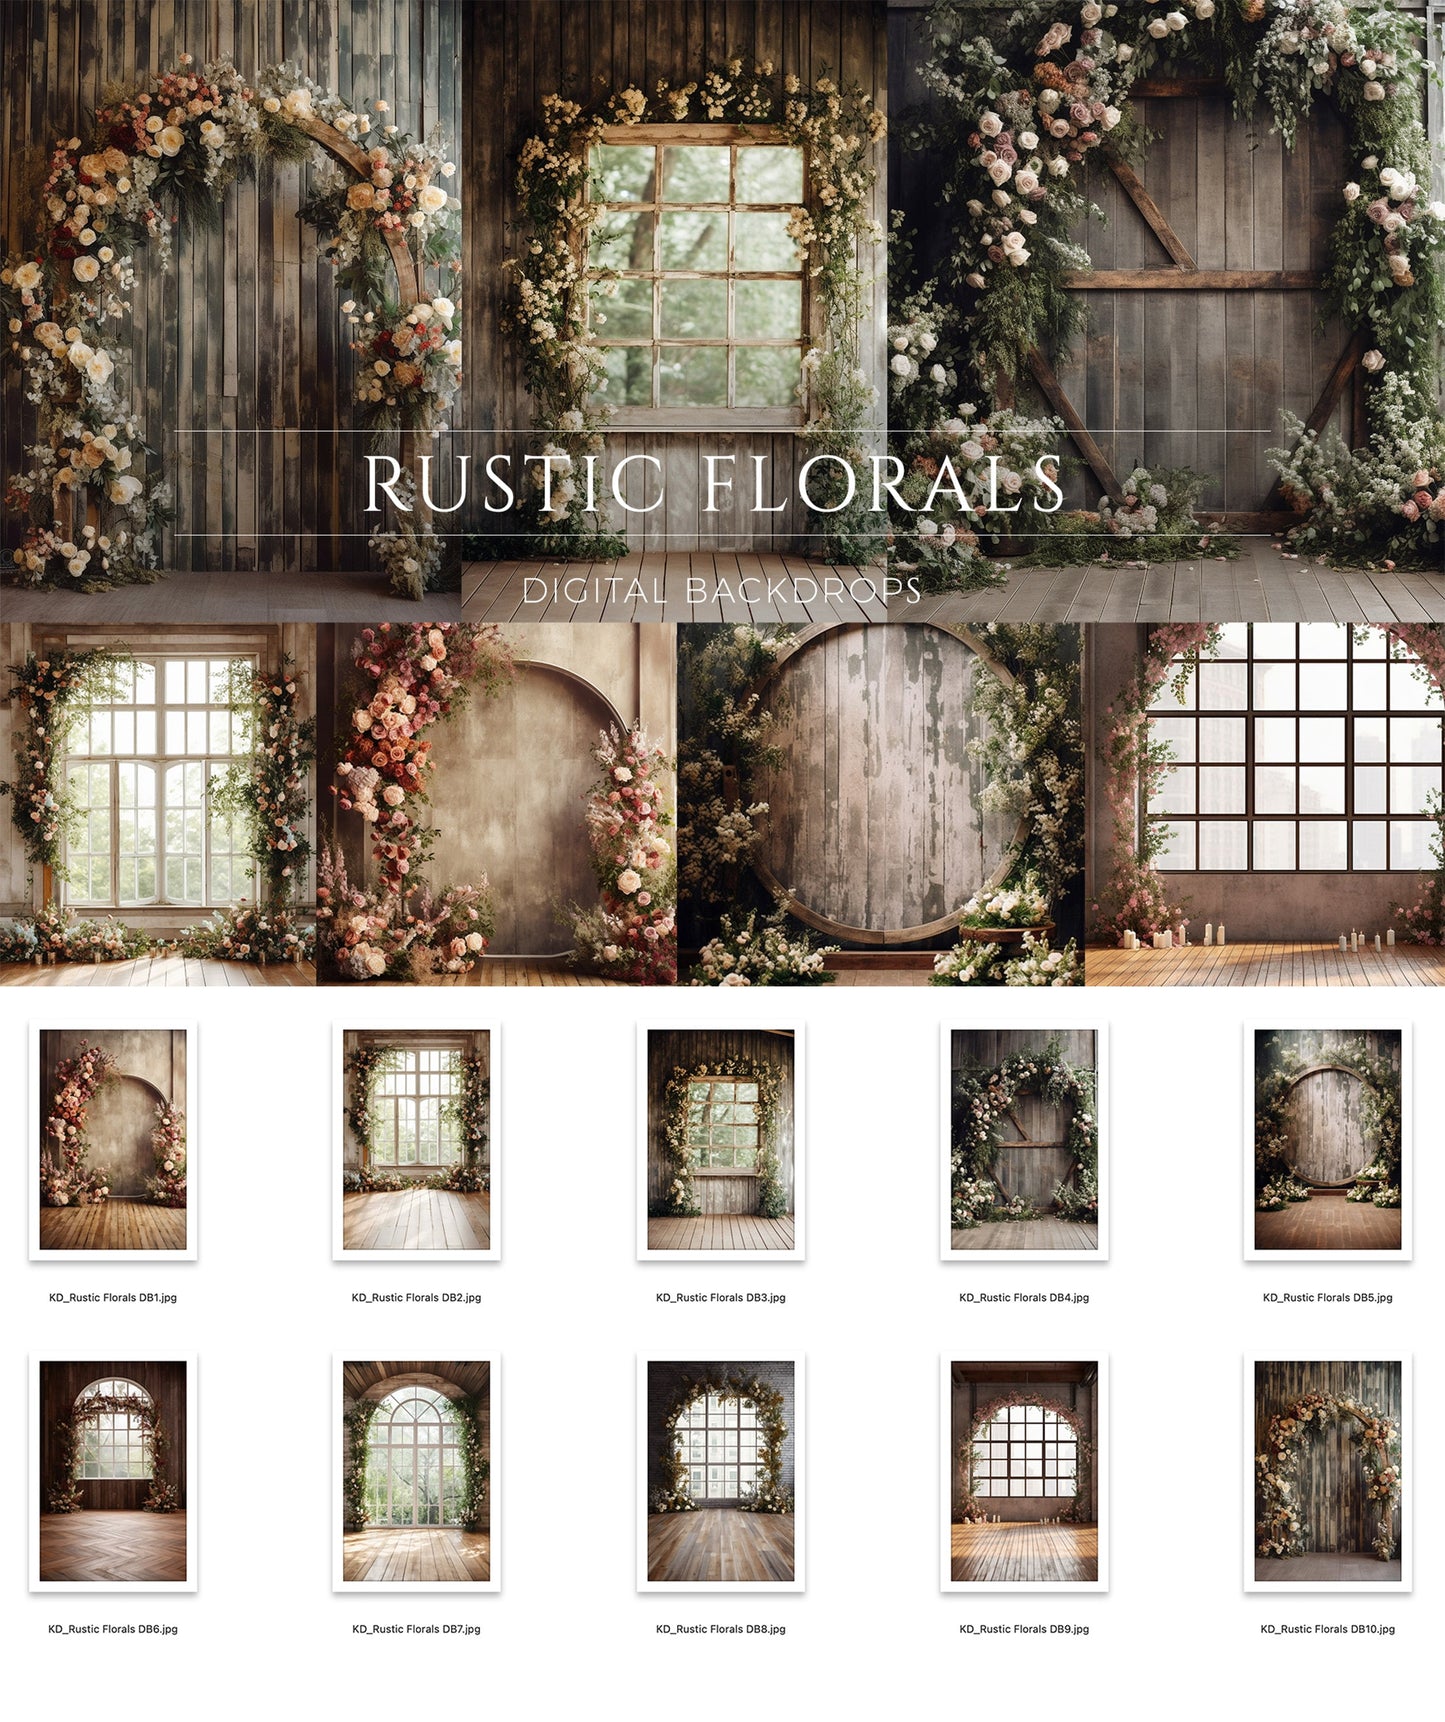 Rustic Florals Digital Backdrops